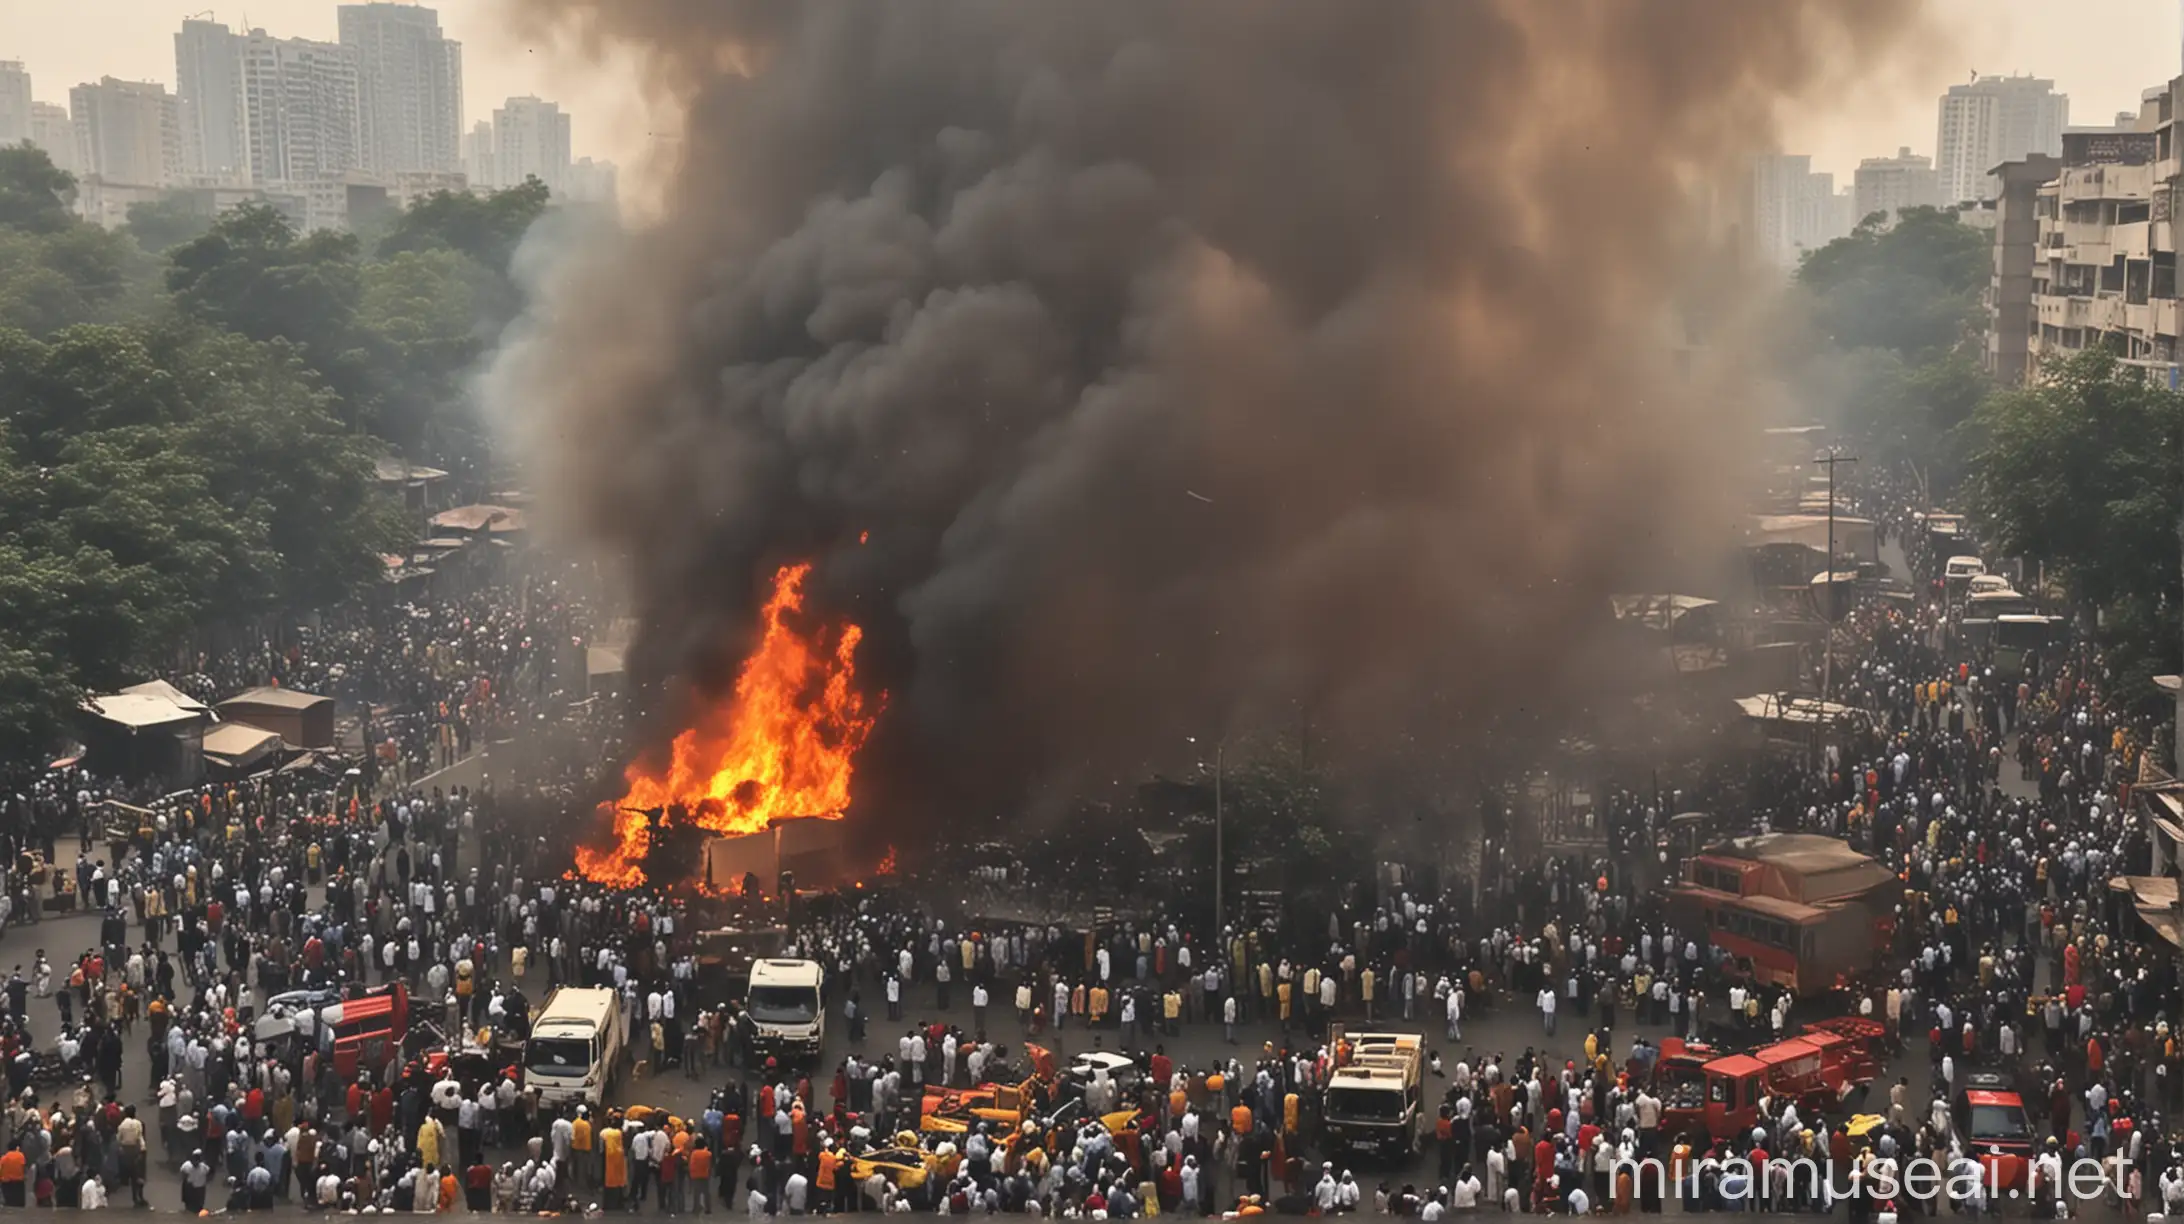 blast in mumbai area, fire